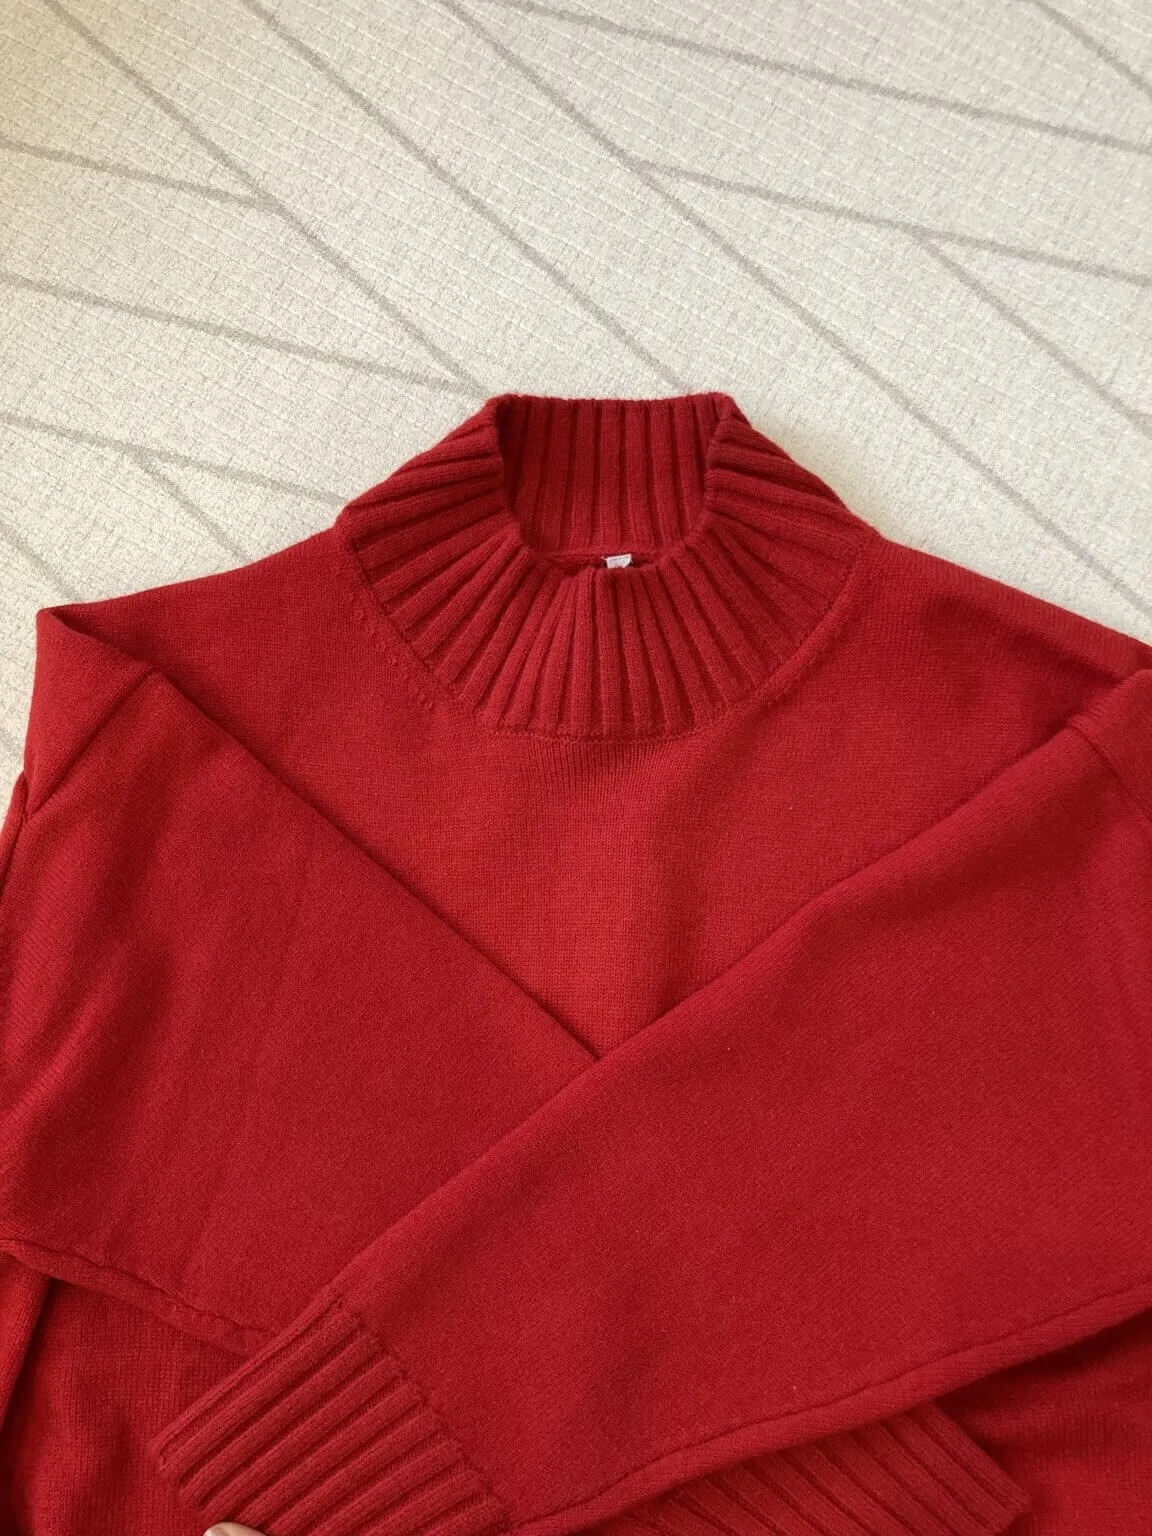 しまむら ユニクロで 大人の赤コーデ リアルなお買い物 赤い服編 セーター ブラウスほか 22秋冬 Lee